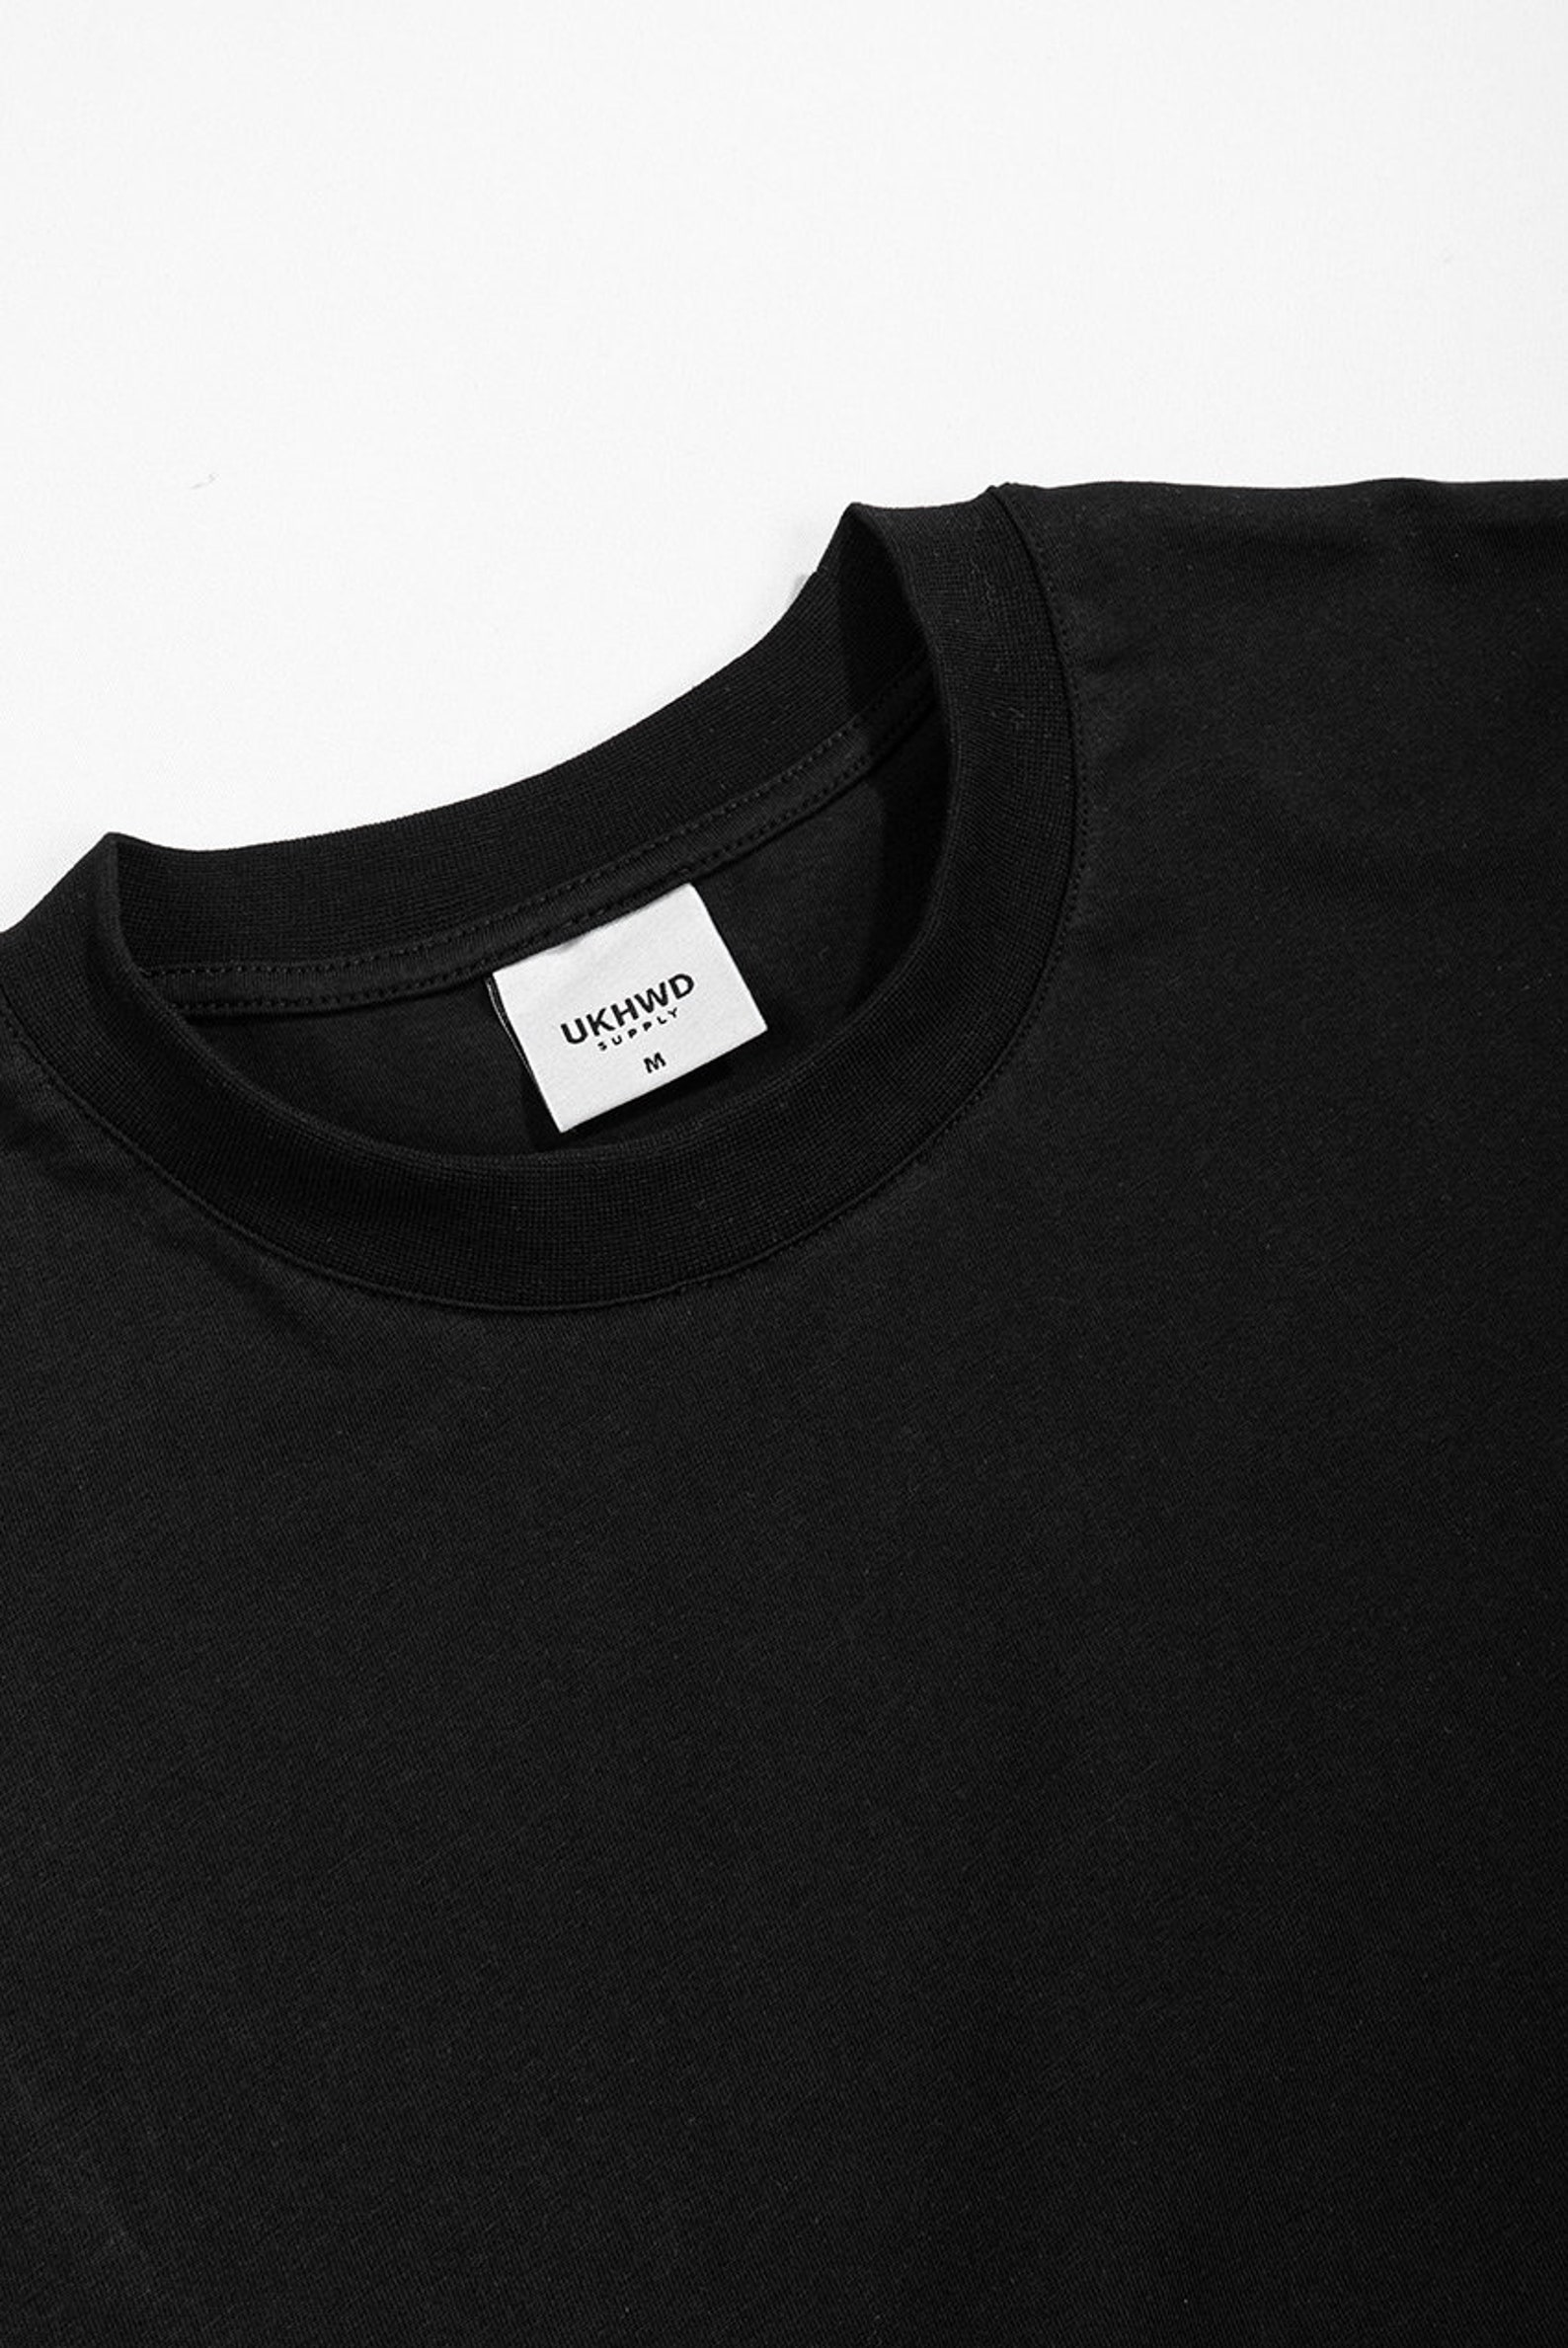 Blank Men's Oversize T-shirt in Black - Etsy